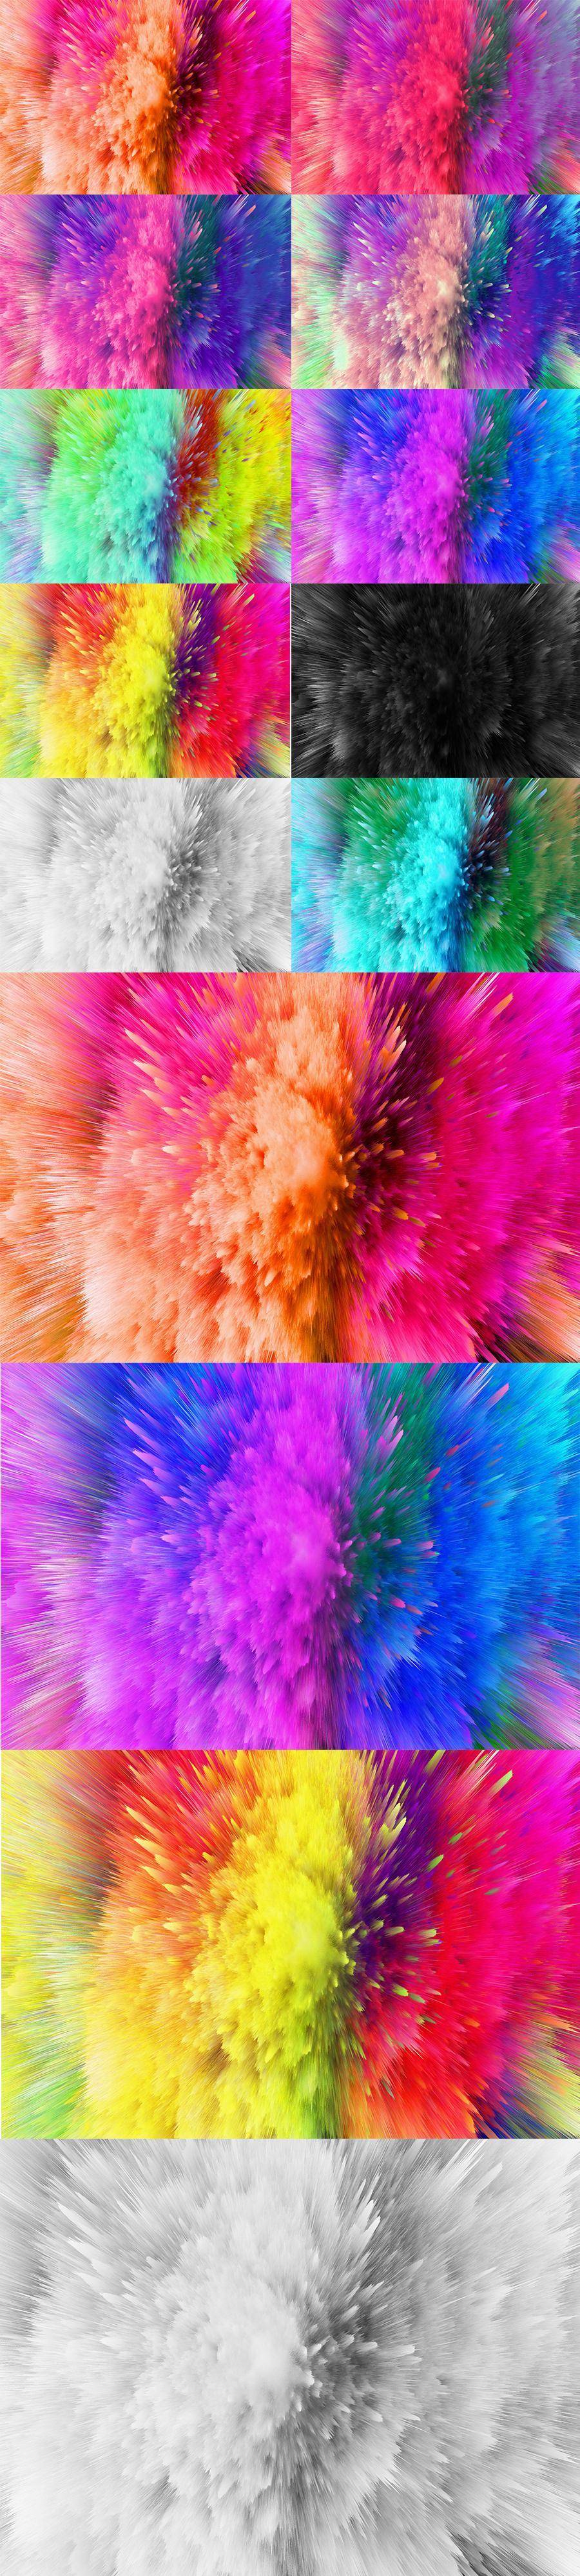 10款彩色粉尘喷溅爆炸纹理4K超清高清背景质感底纹图片素材打包下载